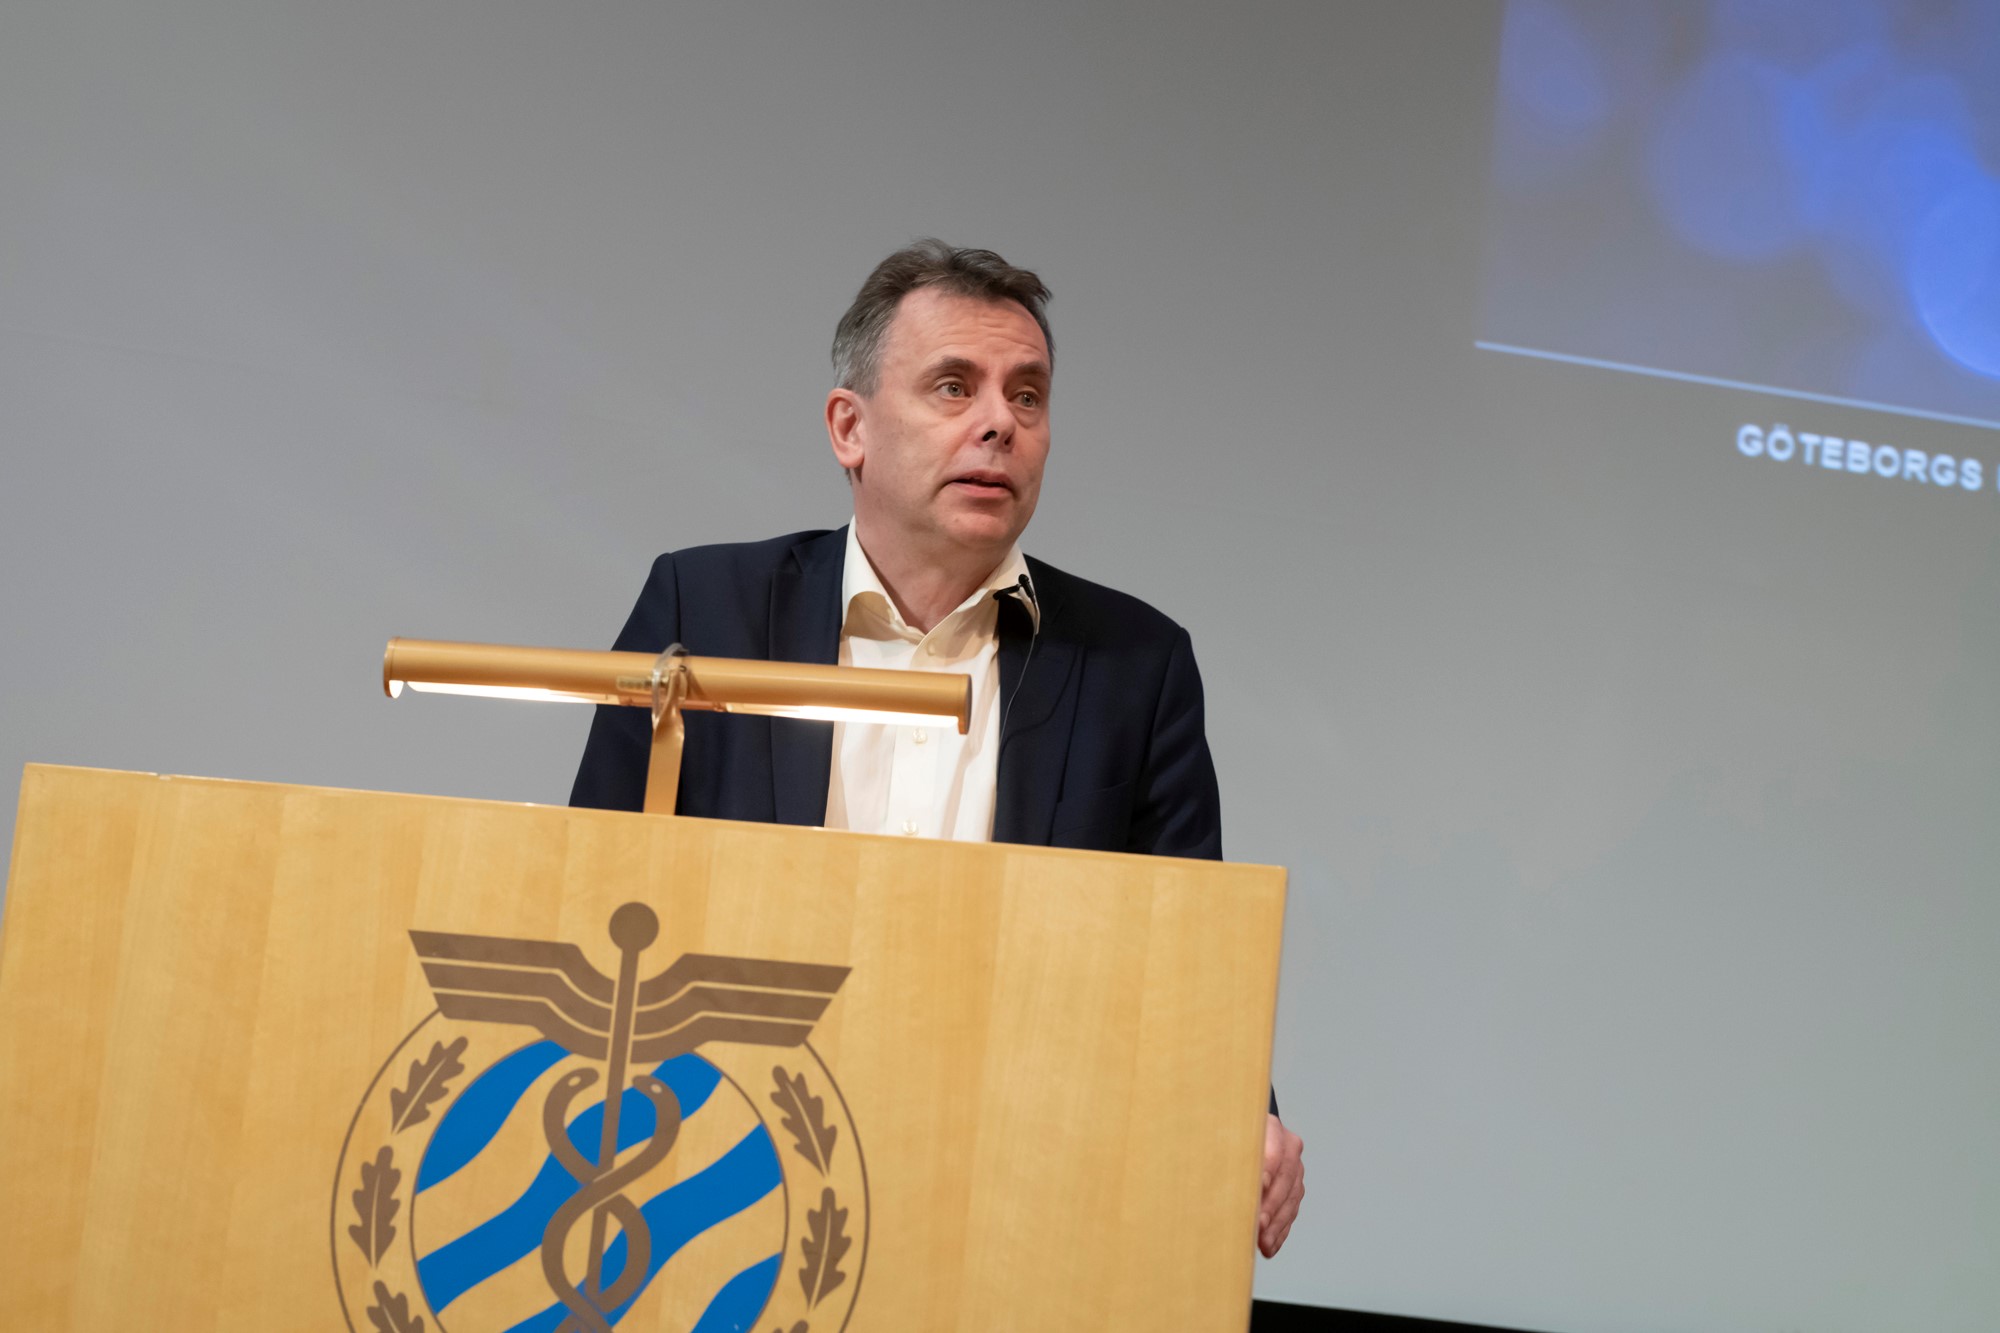 Sveriges förste professor i HRM invigdes idag